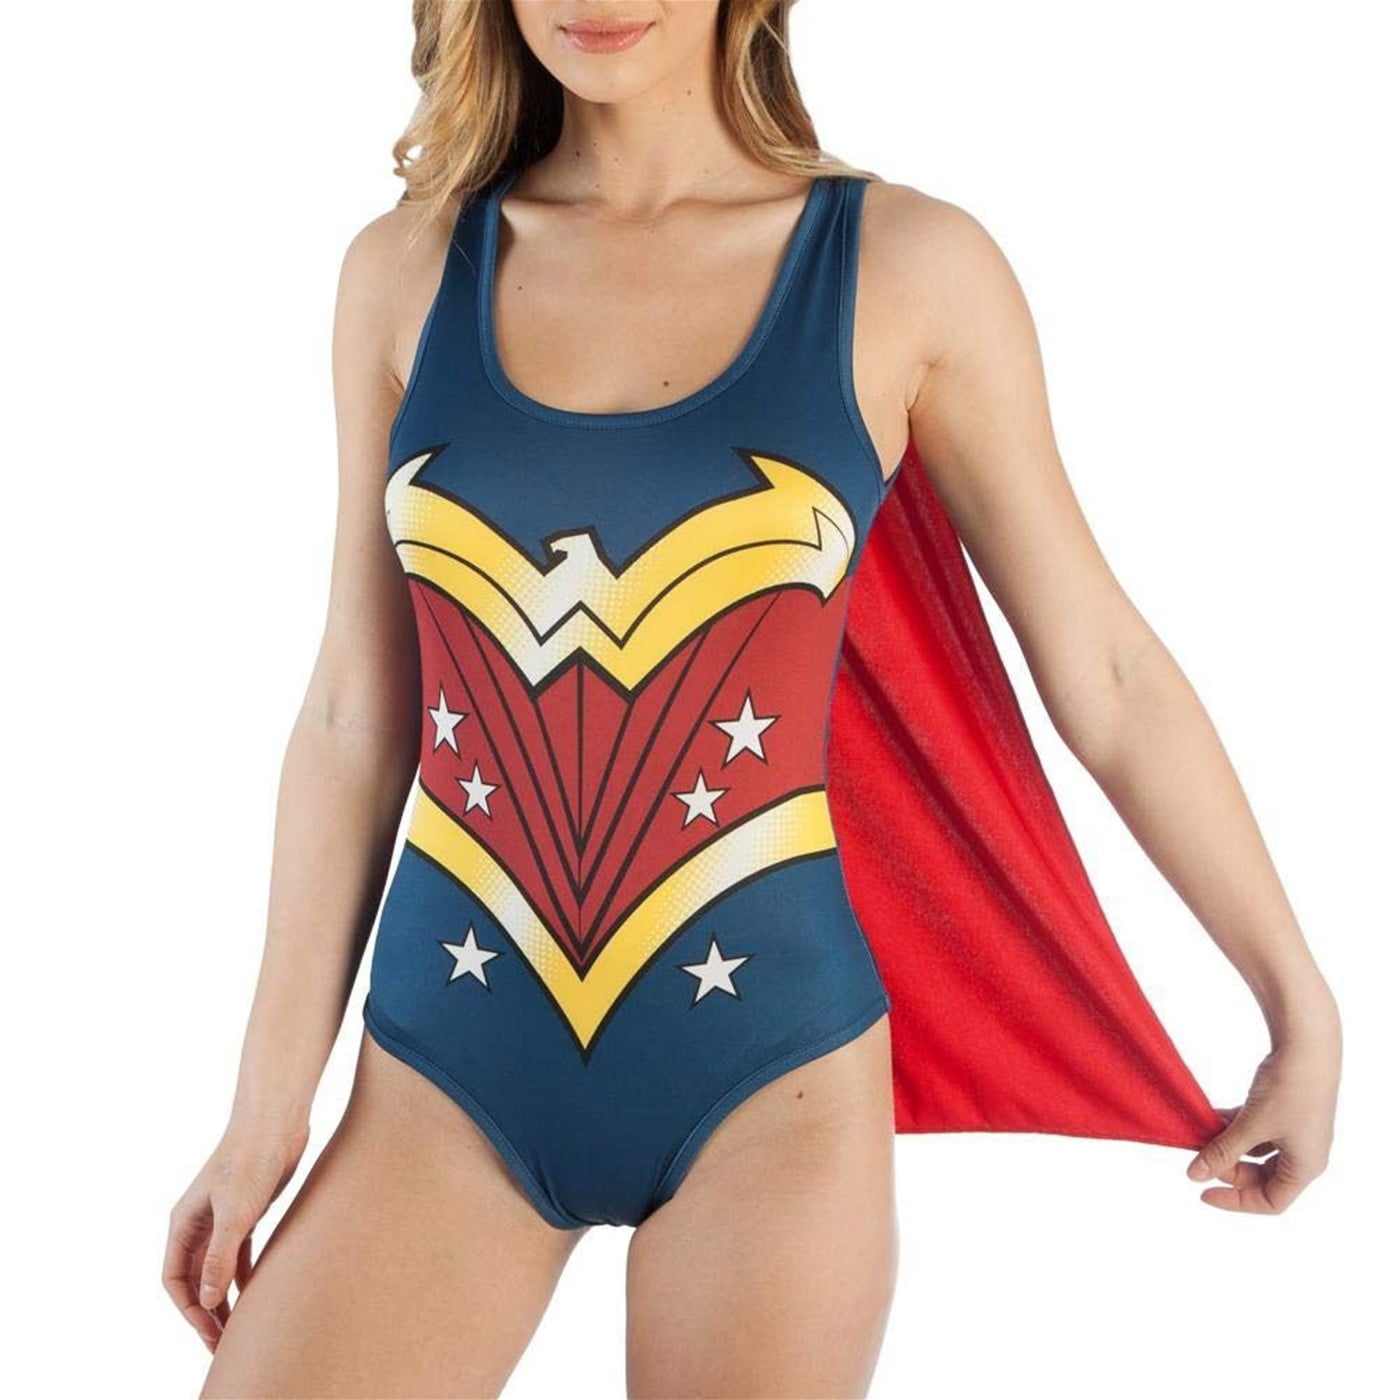 New Wonder Woman DC Originals Womens Costume Sizes S-L-XL-2XL Bodysuit w/Cape 